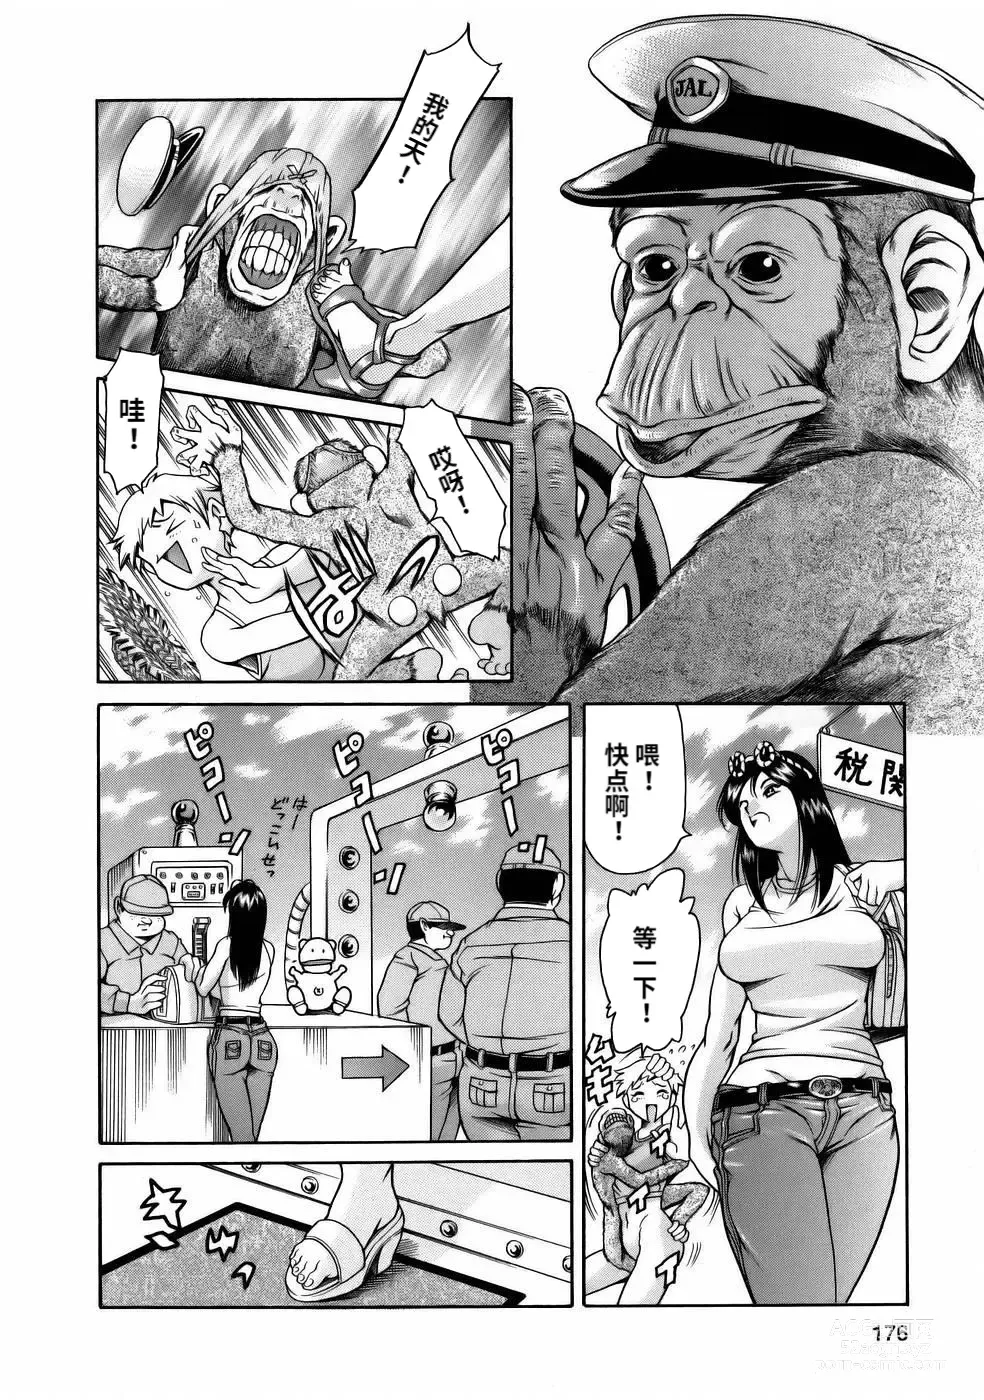 Page 178 of manga Manga Naze Nani Kyoushitsu